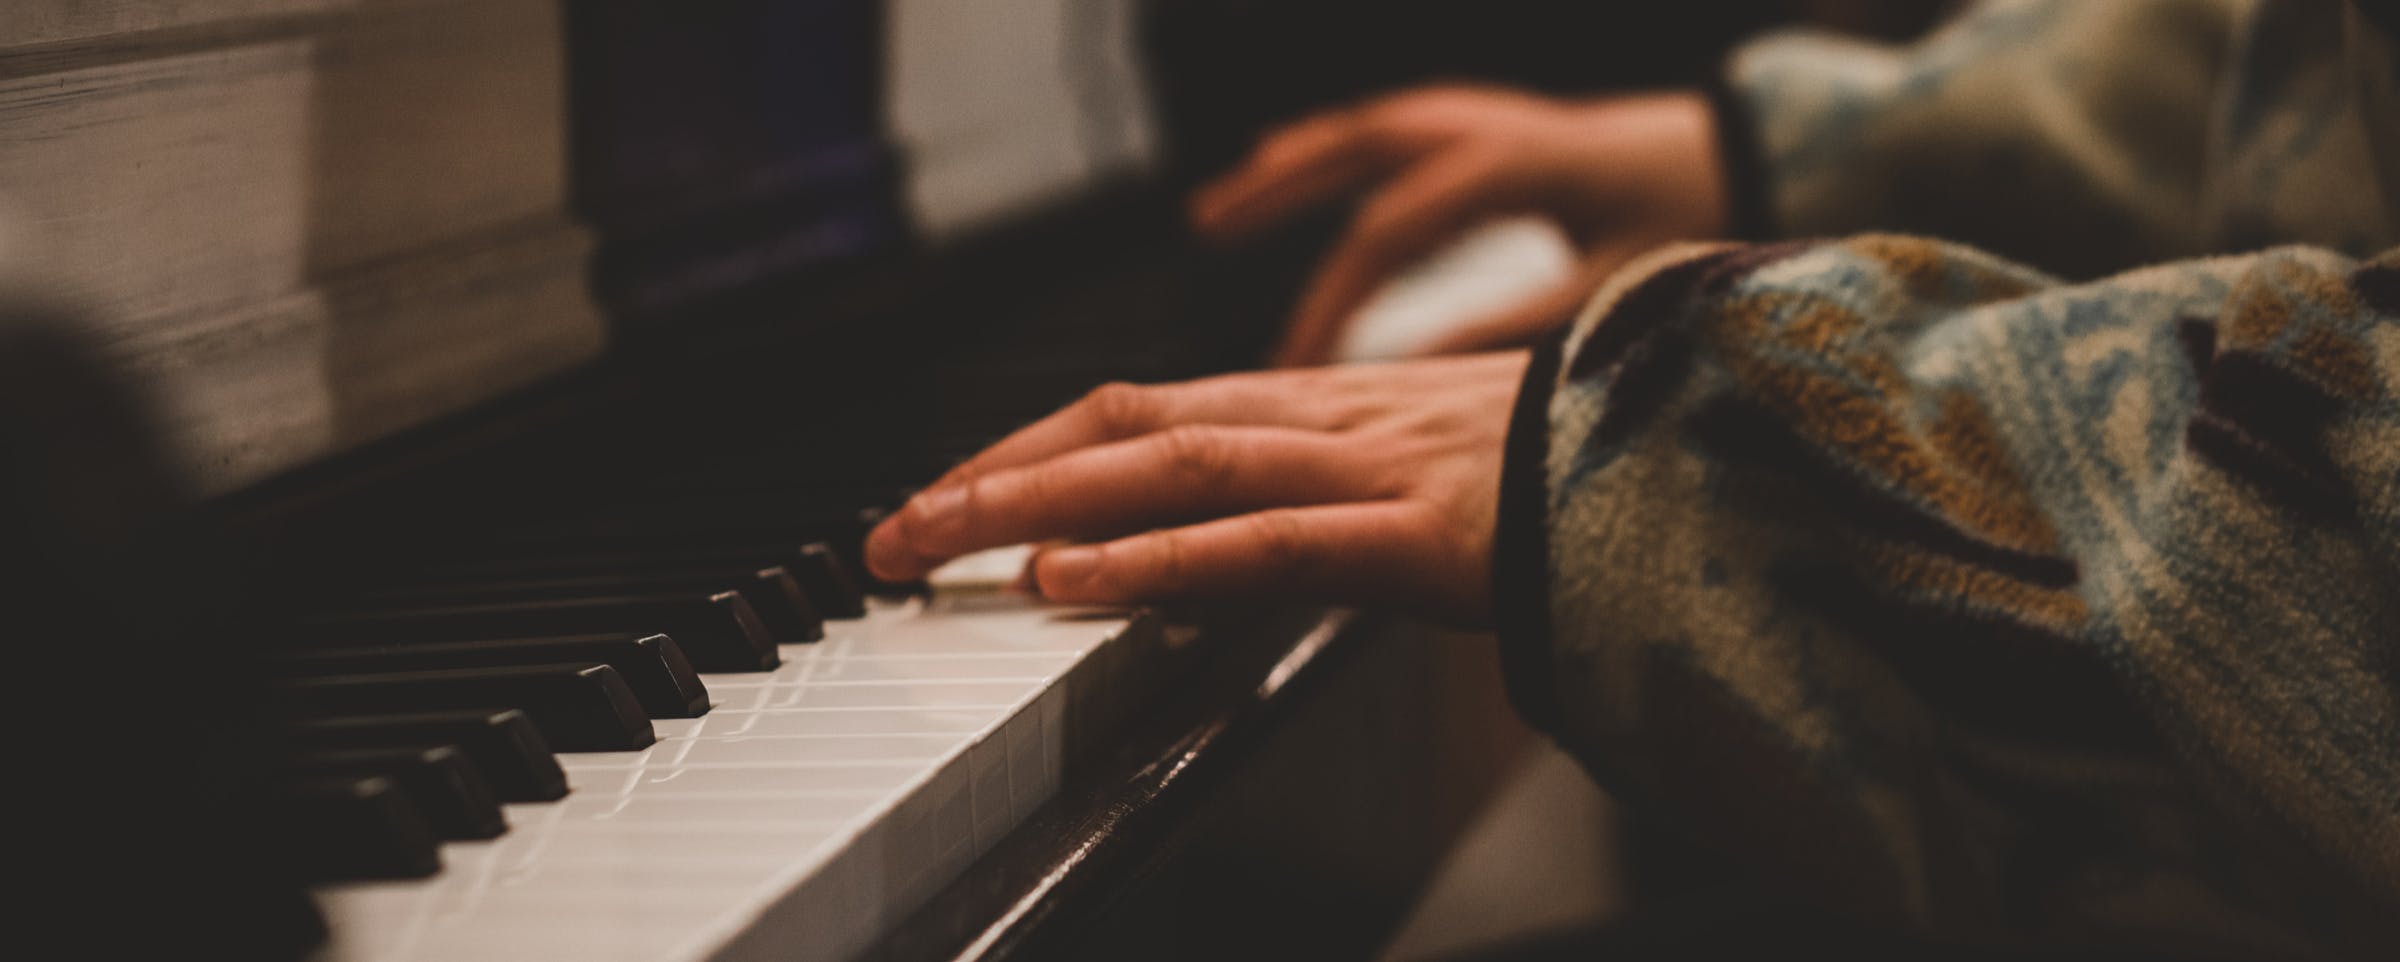 colchón Desviarse escarcha Juegos para piano: cómo tocar el piano de oído (guía rápida) | flowkey